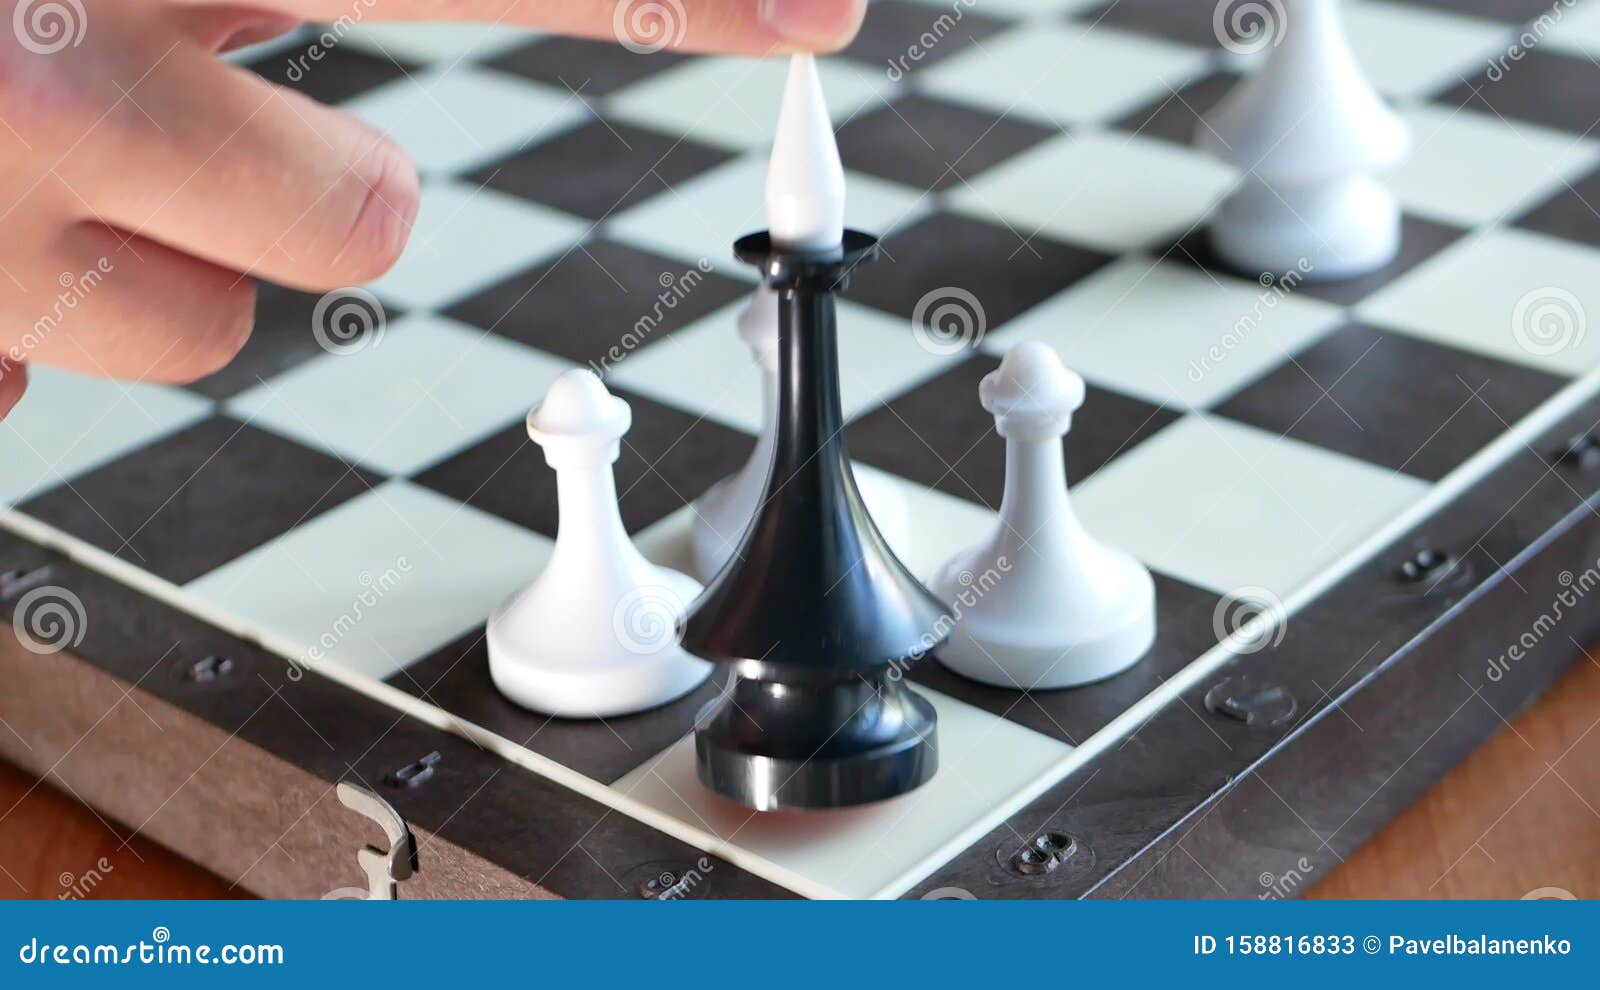 Xadrez SLT: [Conhecendo o xadrez] O movimento do rei